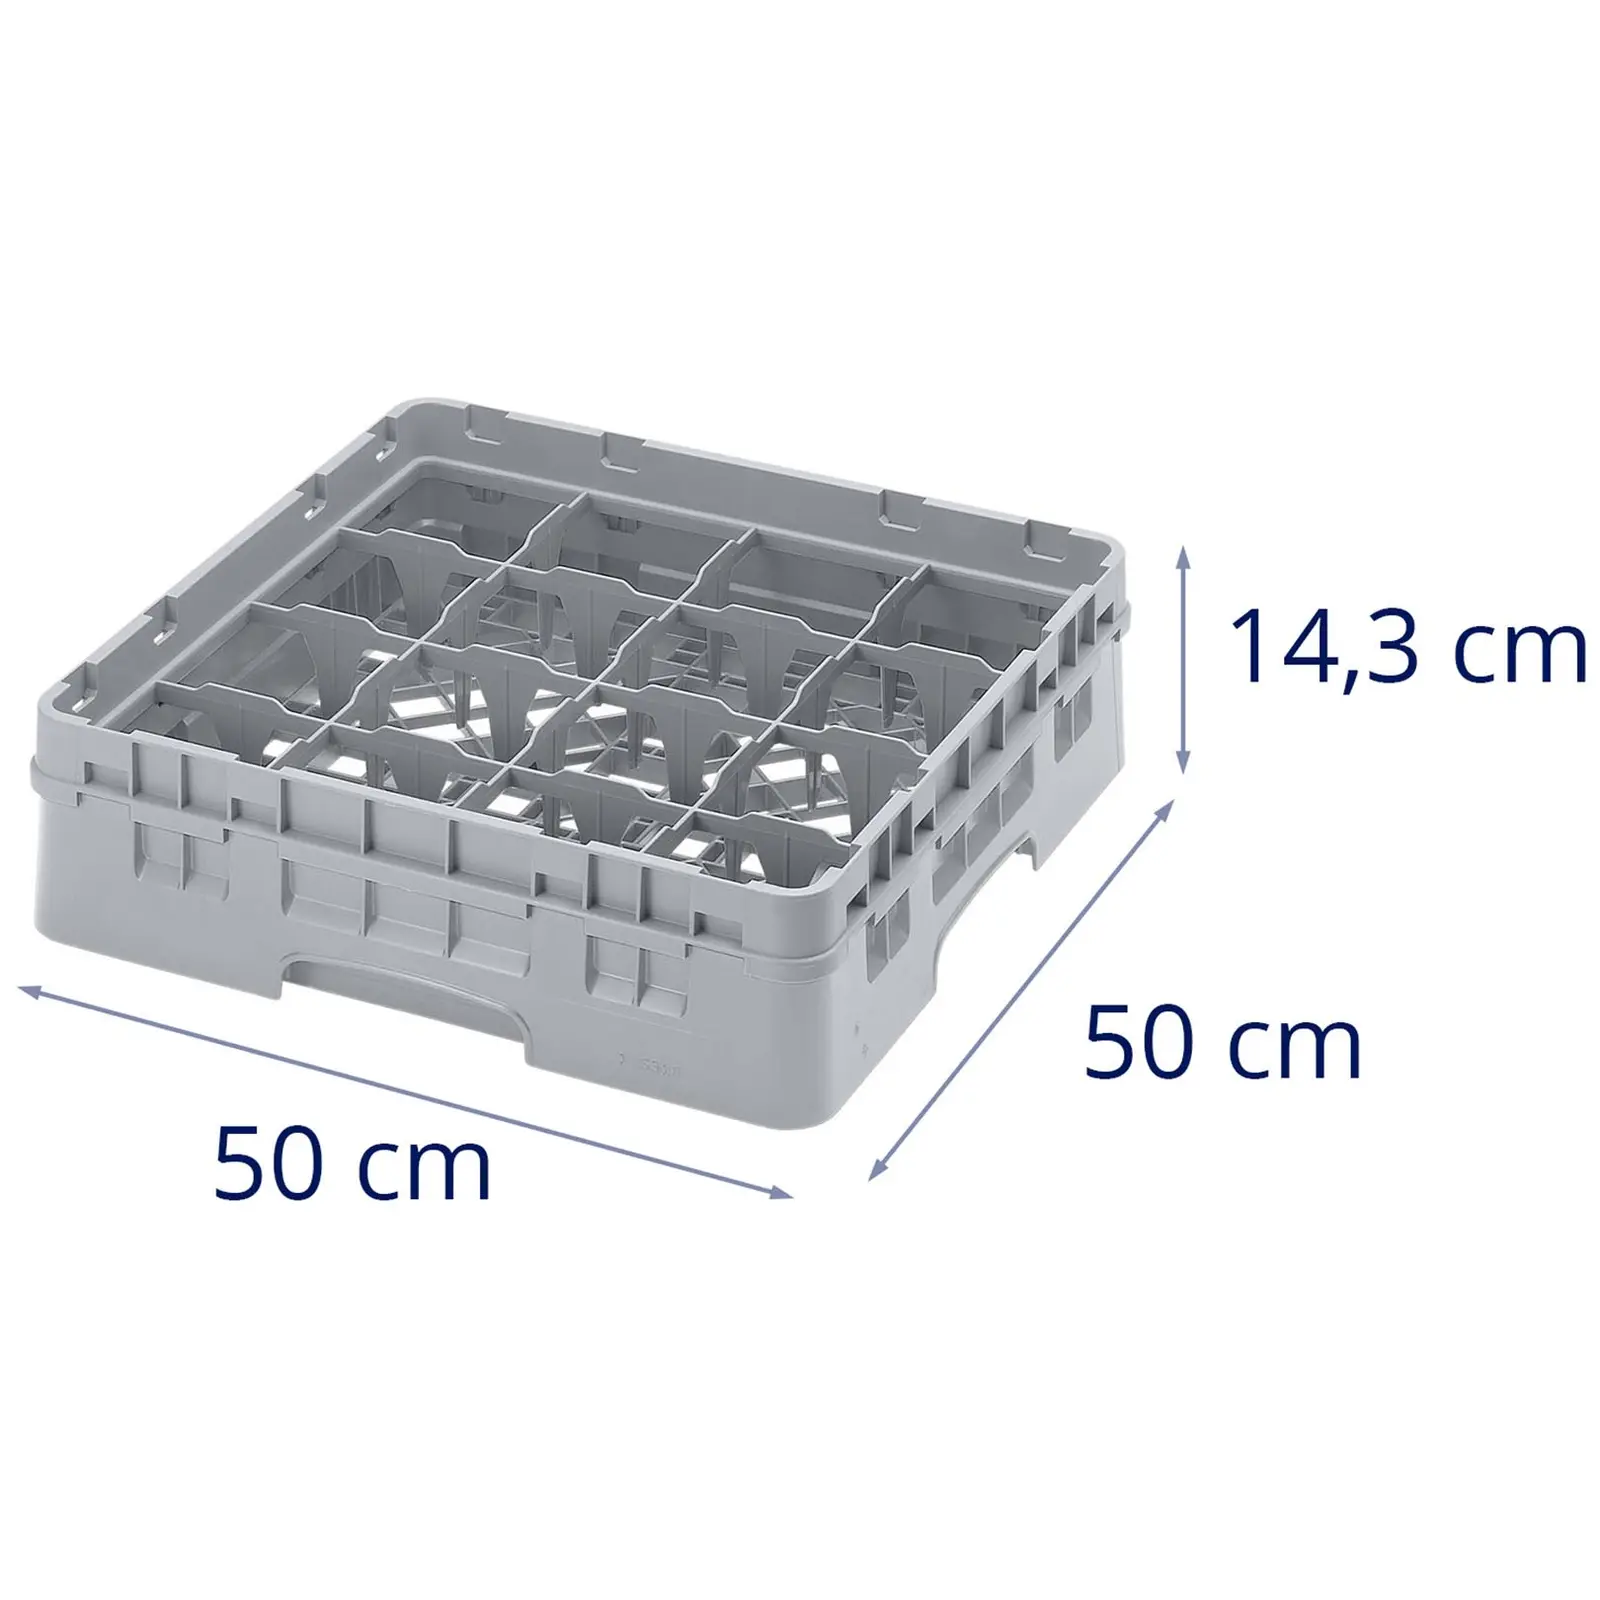 Cesta Camrack - 16 compartimentos - 50 x 50 x 14.3 cm - Altura de vaso: 9.2 cm